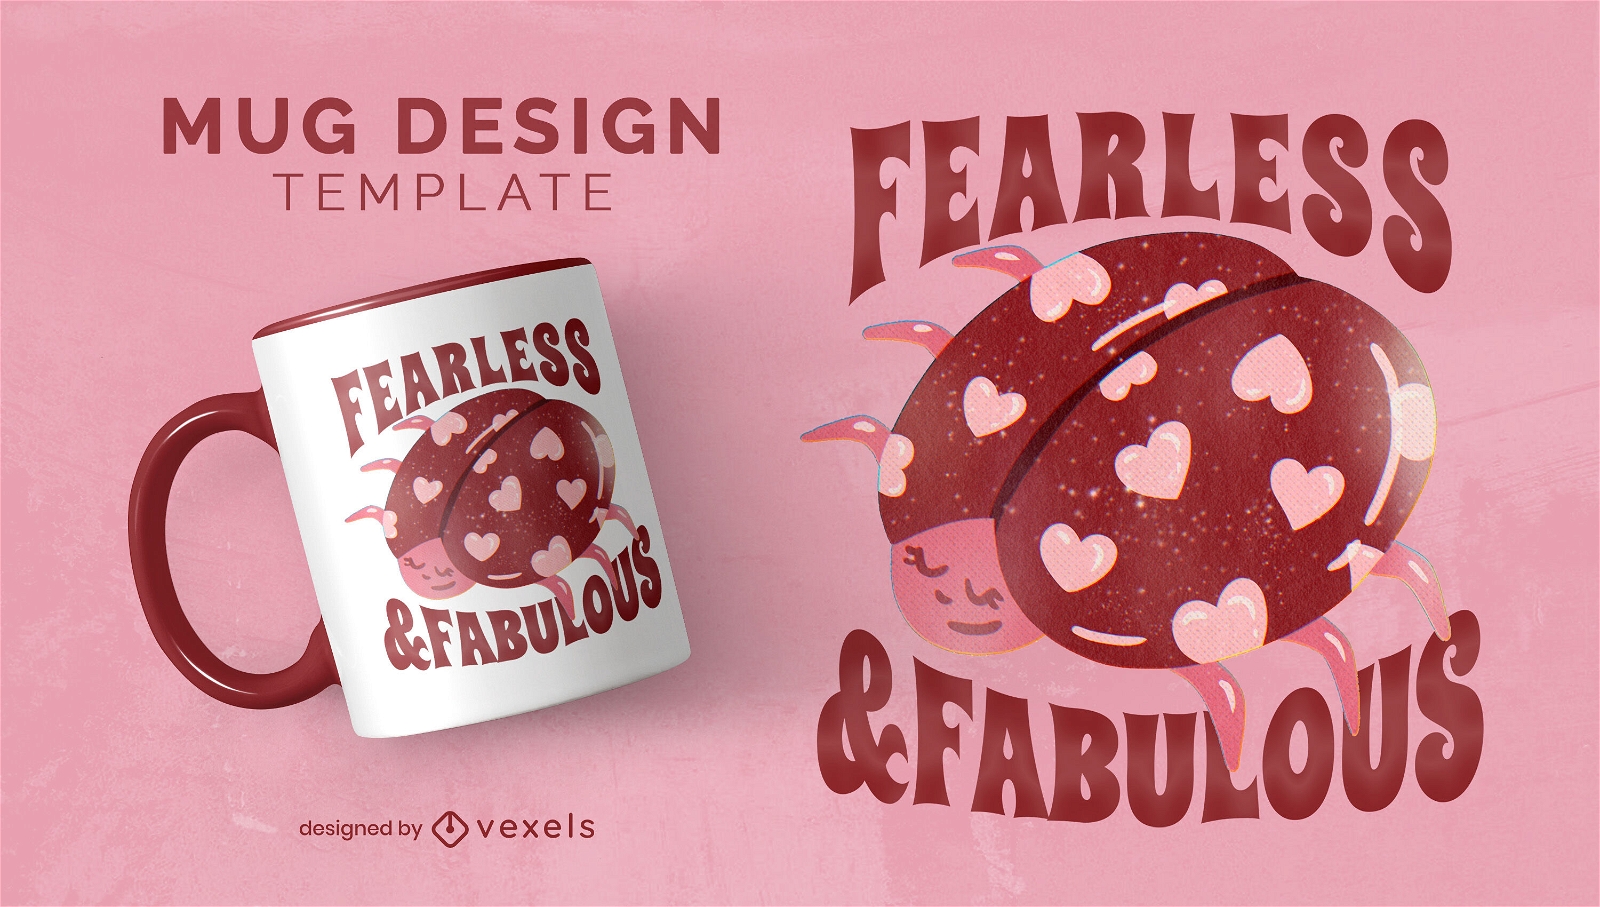 Fearless ladybug sentiment mug design